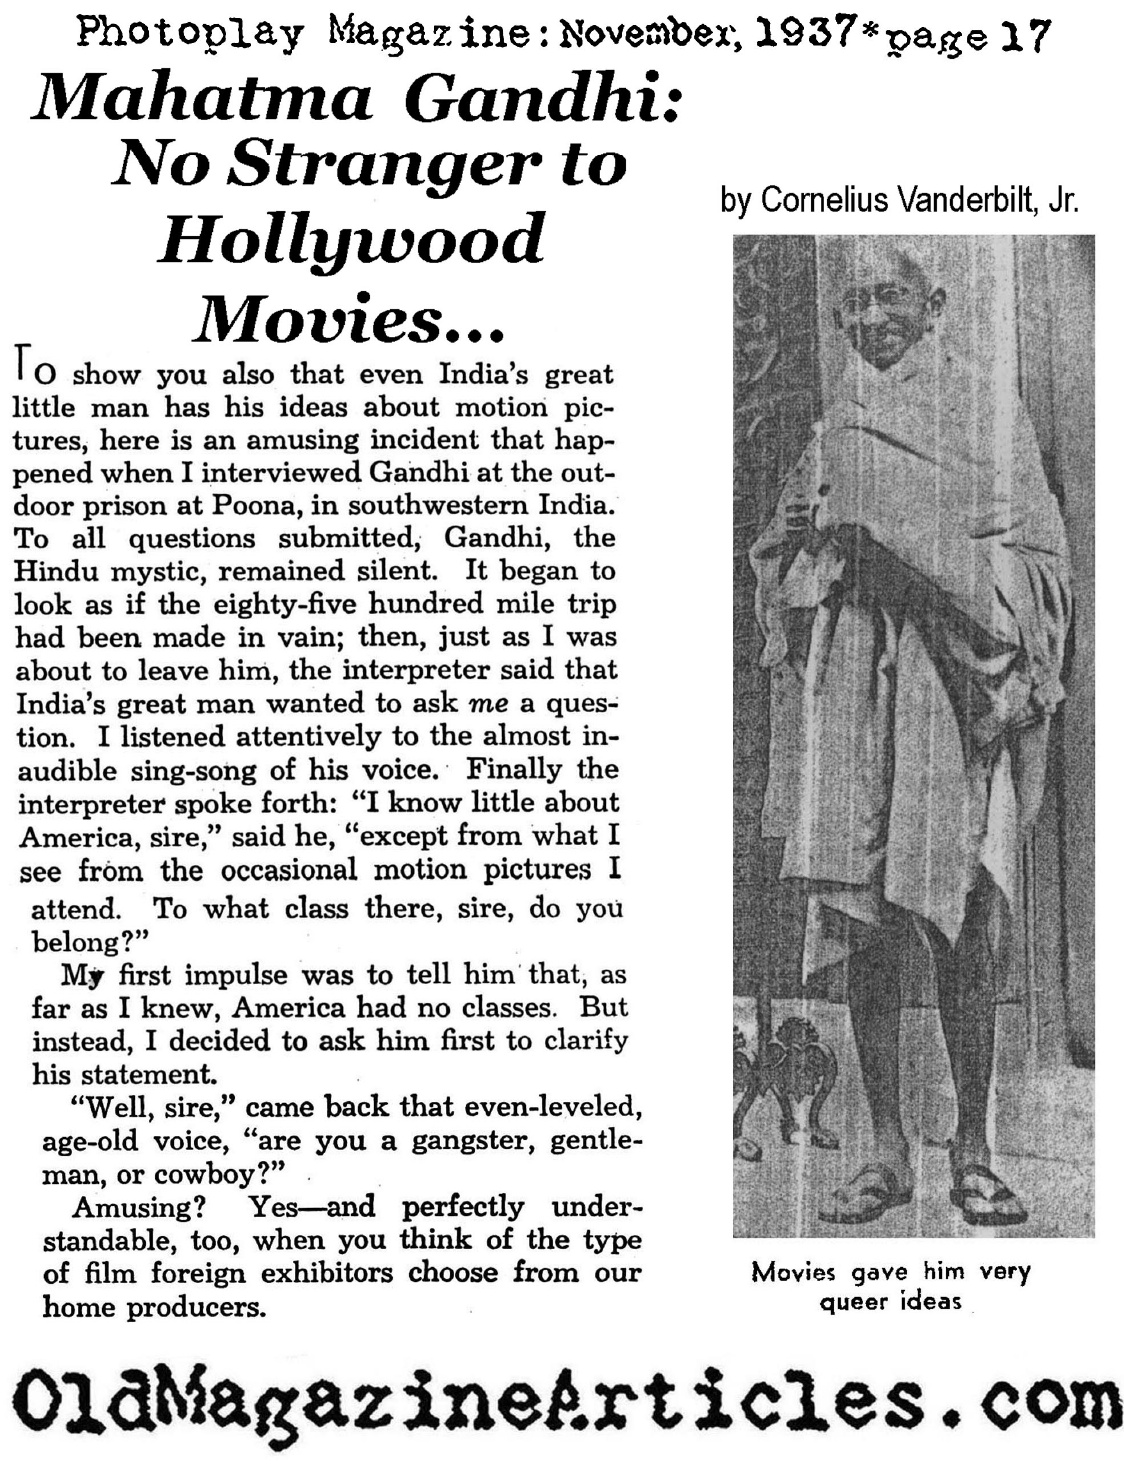  Gahndi and American Movies (Photoplay Magazine, 1937)